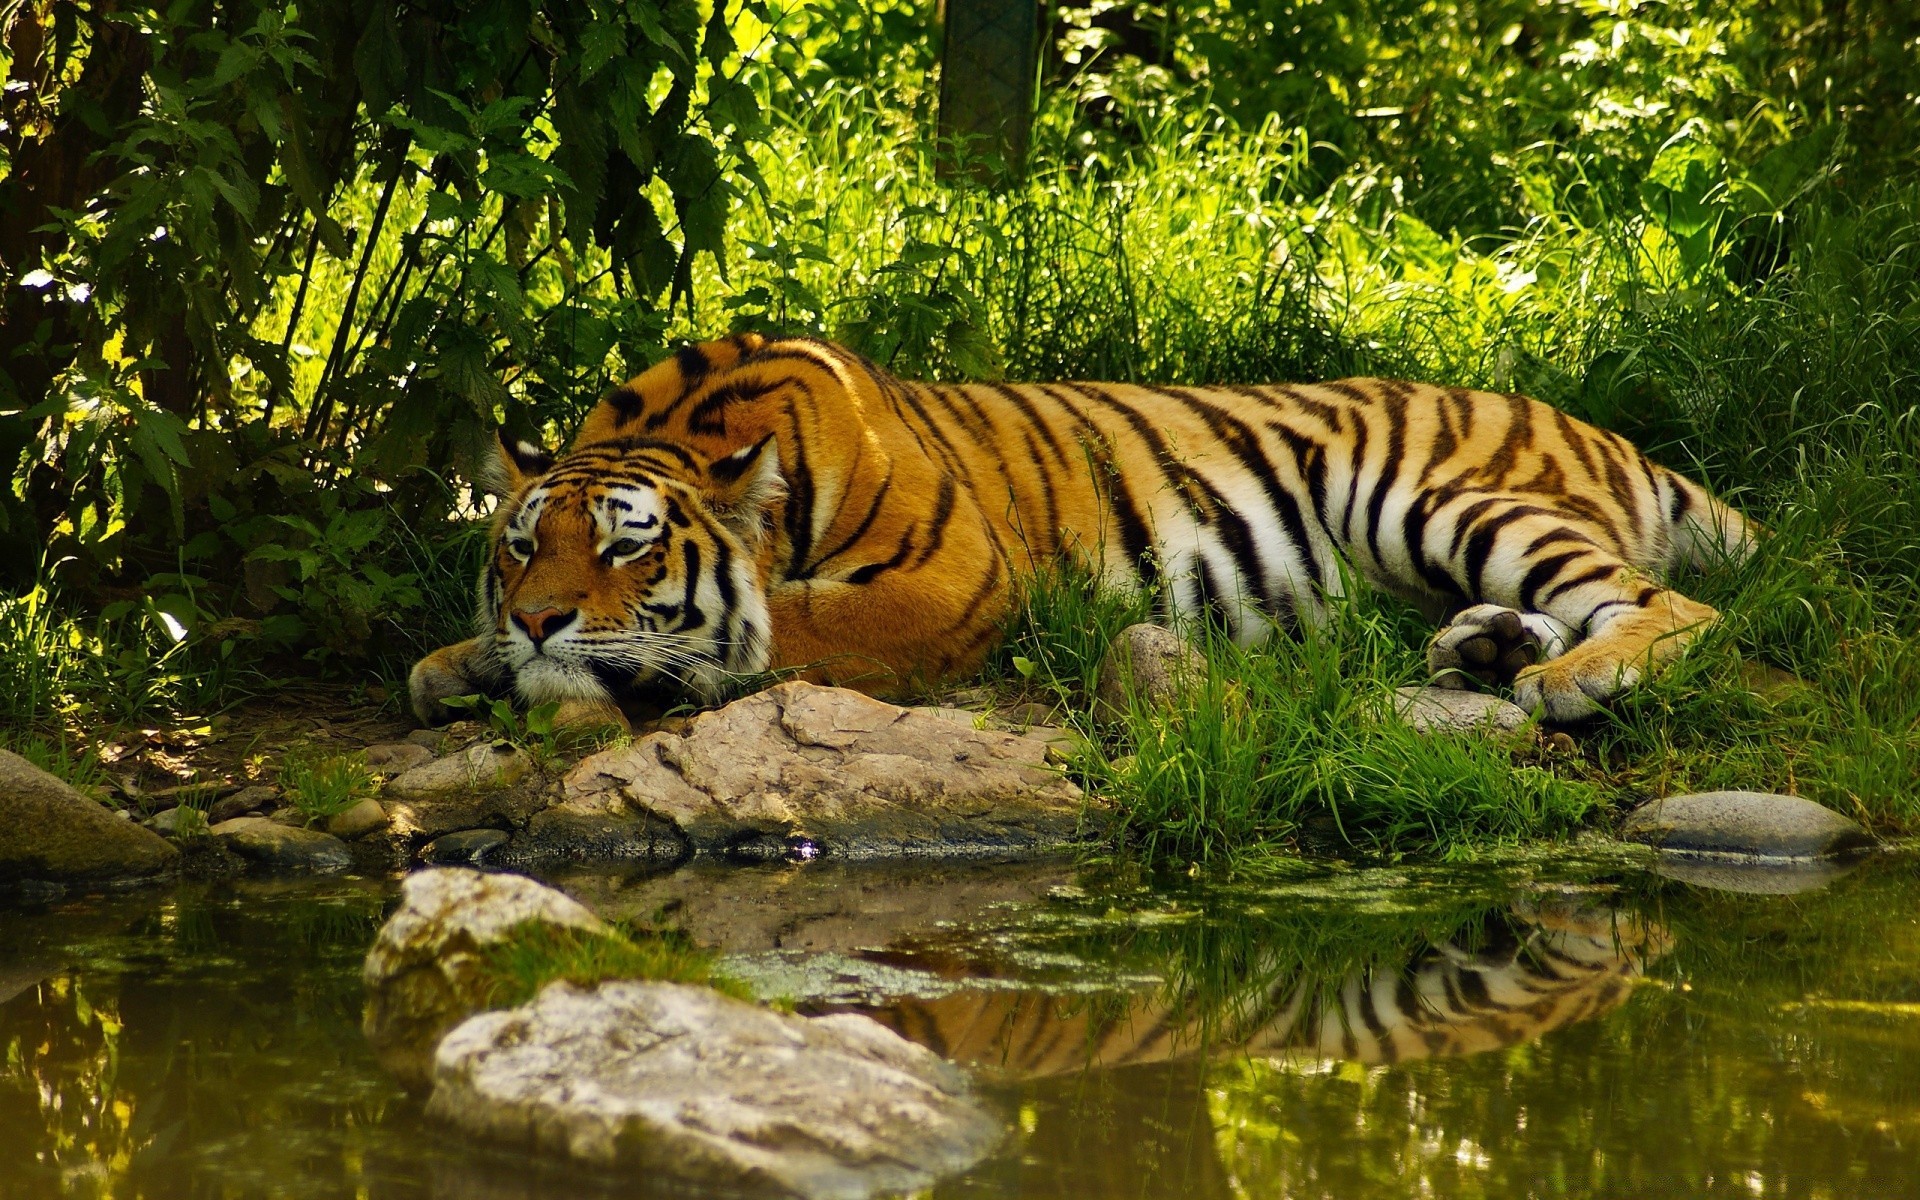 животные тигр дикой природы кошка млекопитающее джунгли зоопарк хищник охотник глядя агрессии полоса дикий сафари опасность мех природа мясоед злой охота